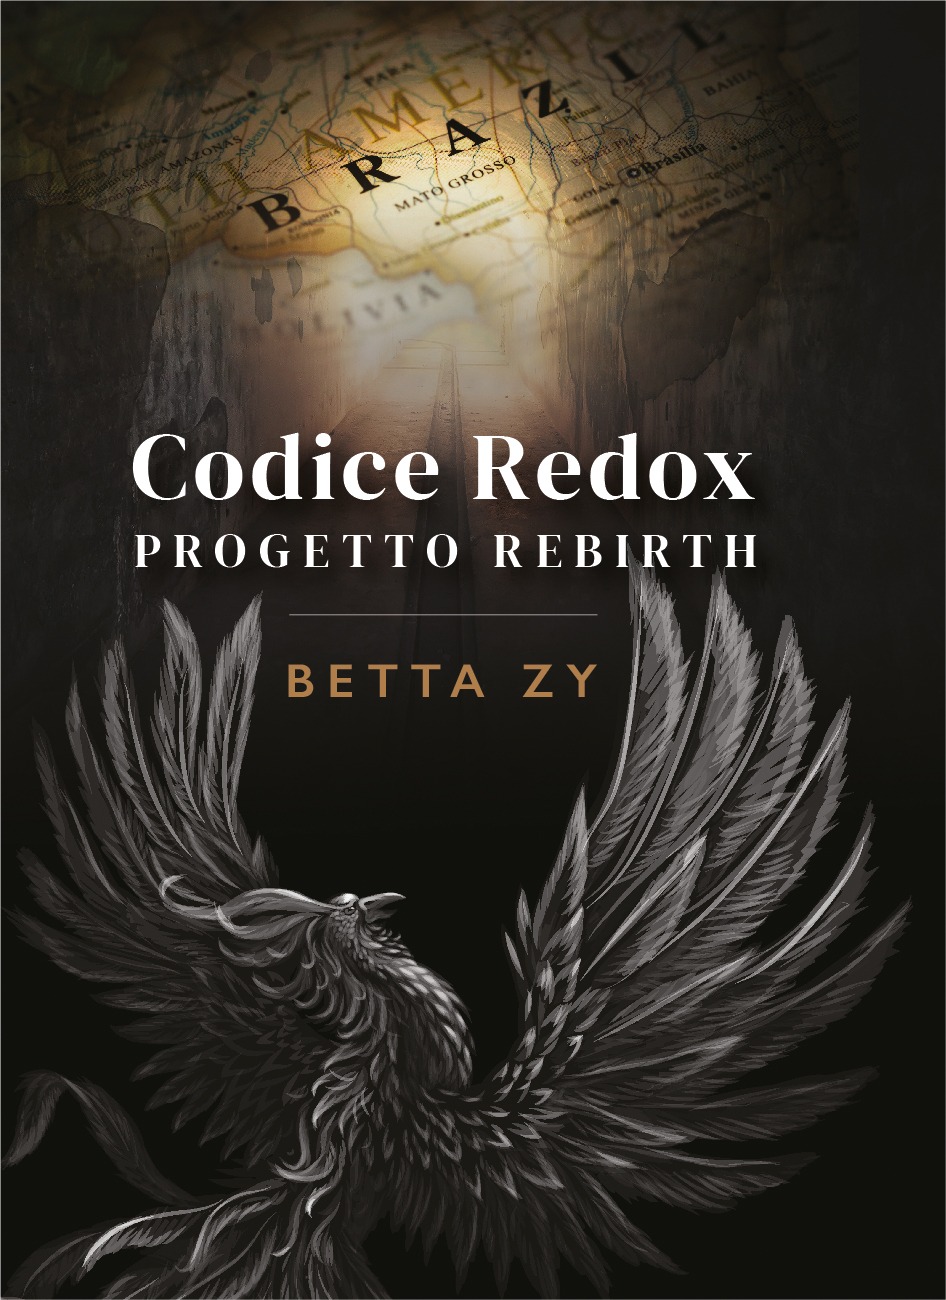 Tornano le avventure della Sesta Compagnia nel secondo romanzo della serie “Codice Redox”